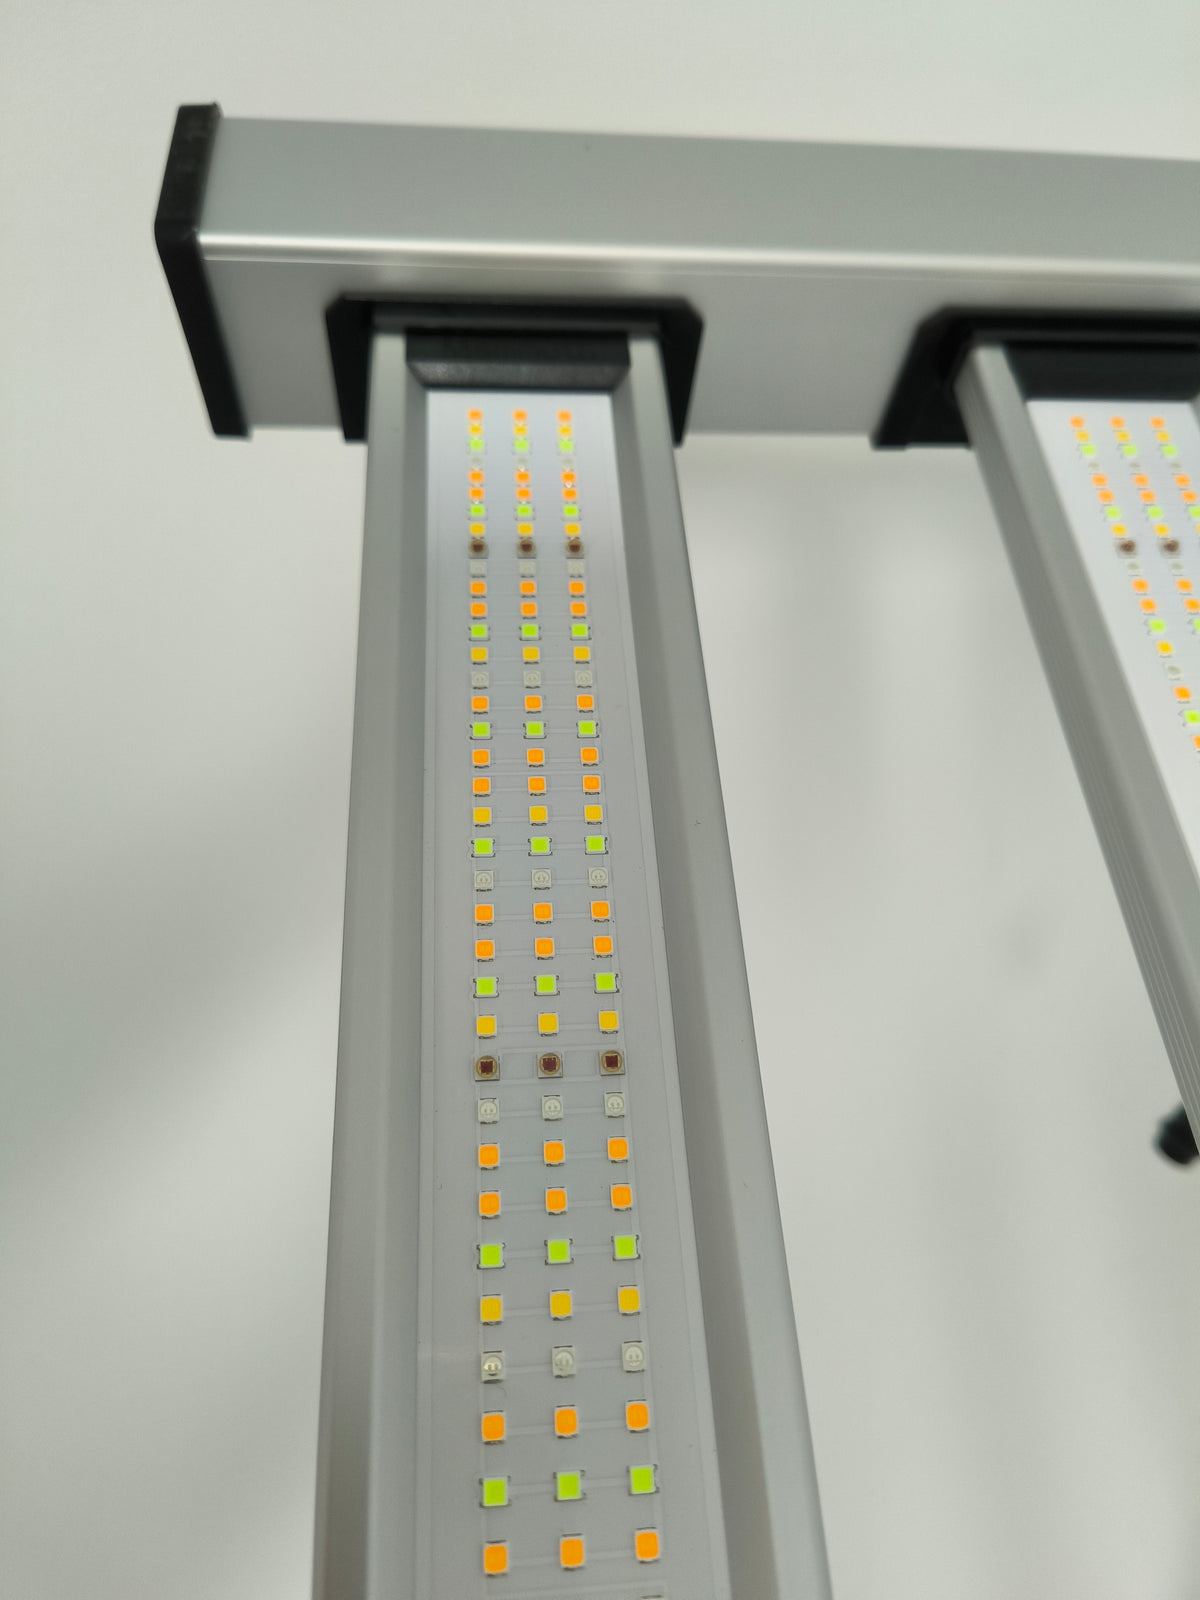 LED Light bar for machinery, Ireland